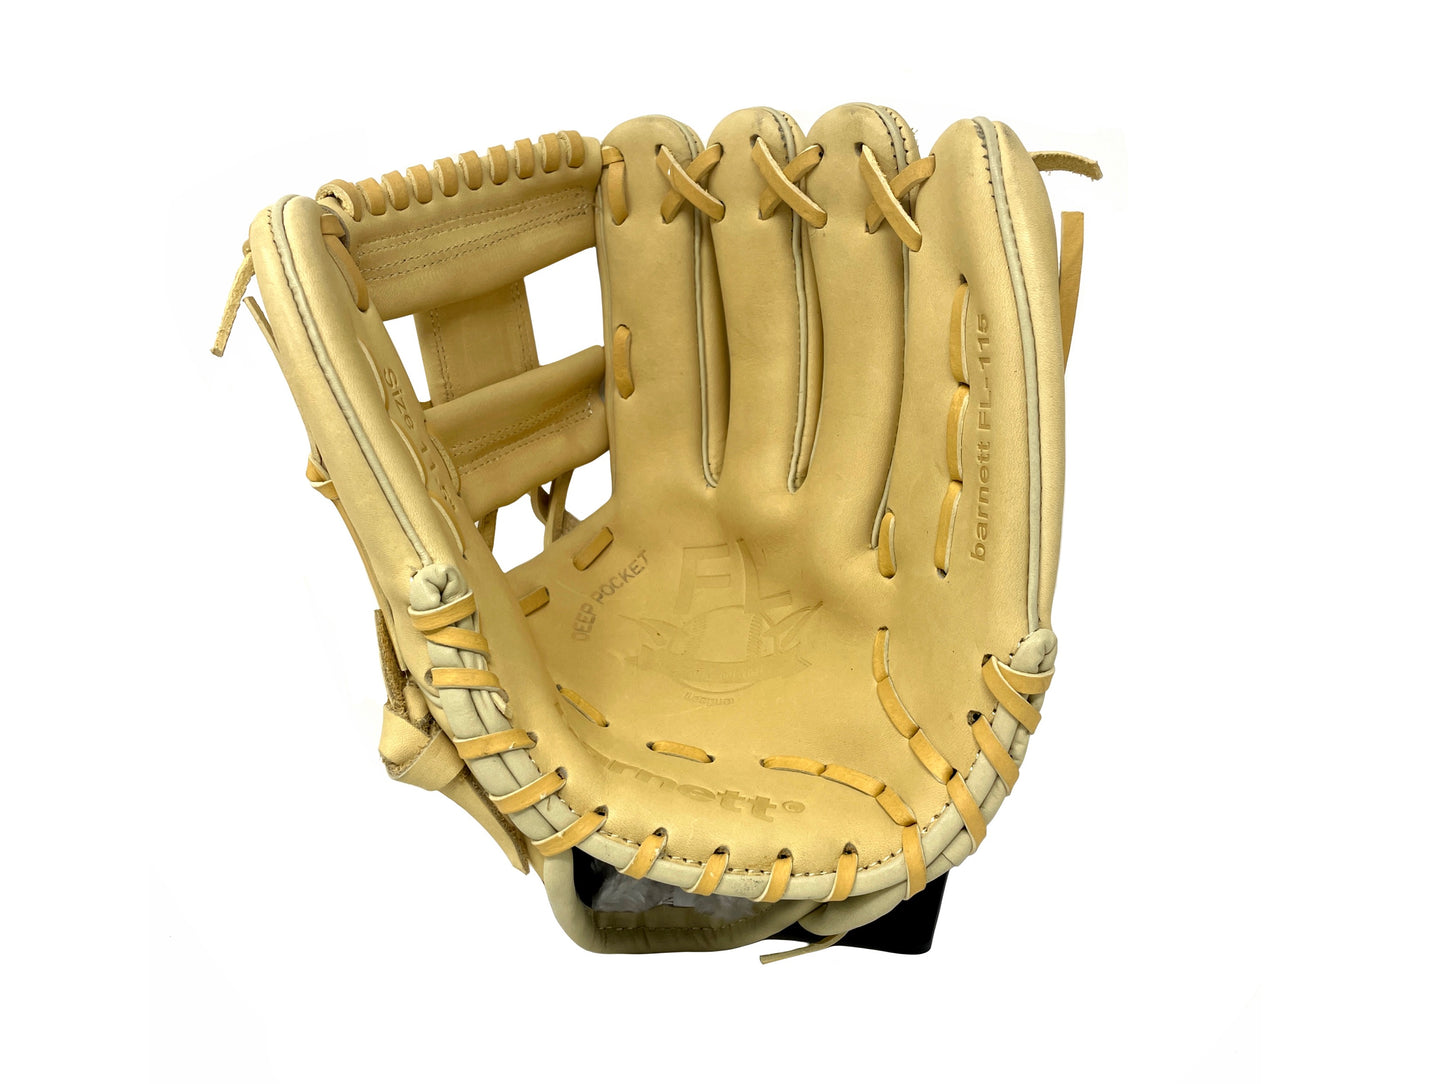 FL-115 gant de baseball cuir haute qualité infield/outfield 11, beige